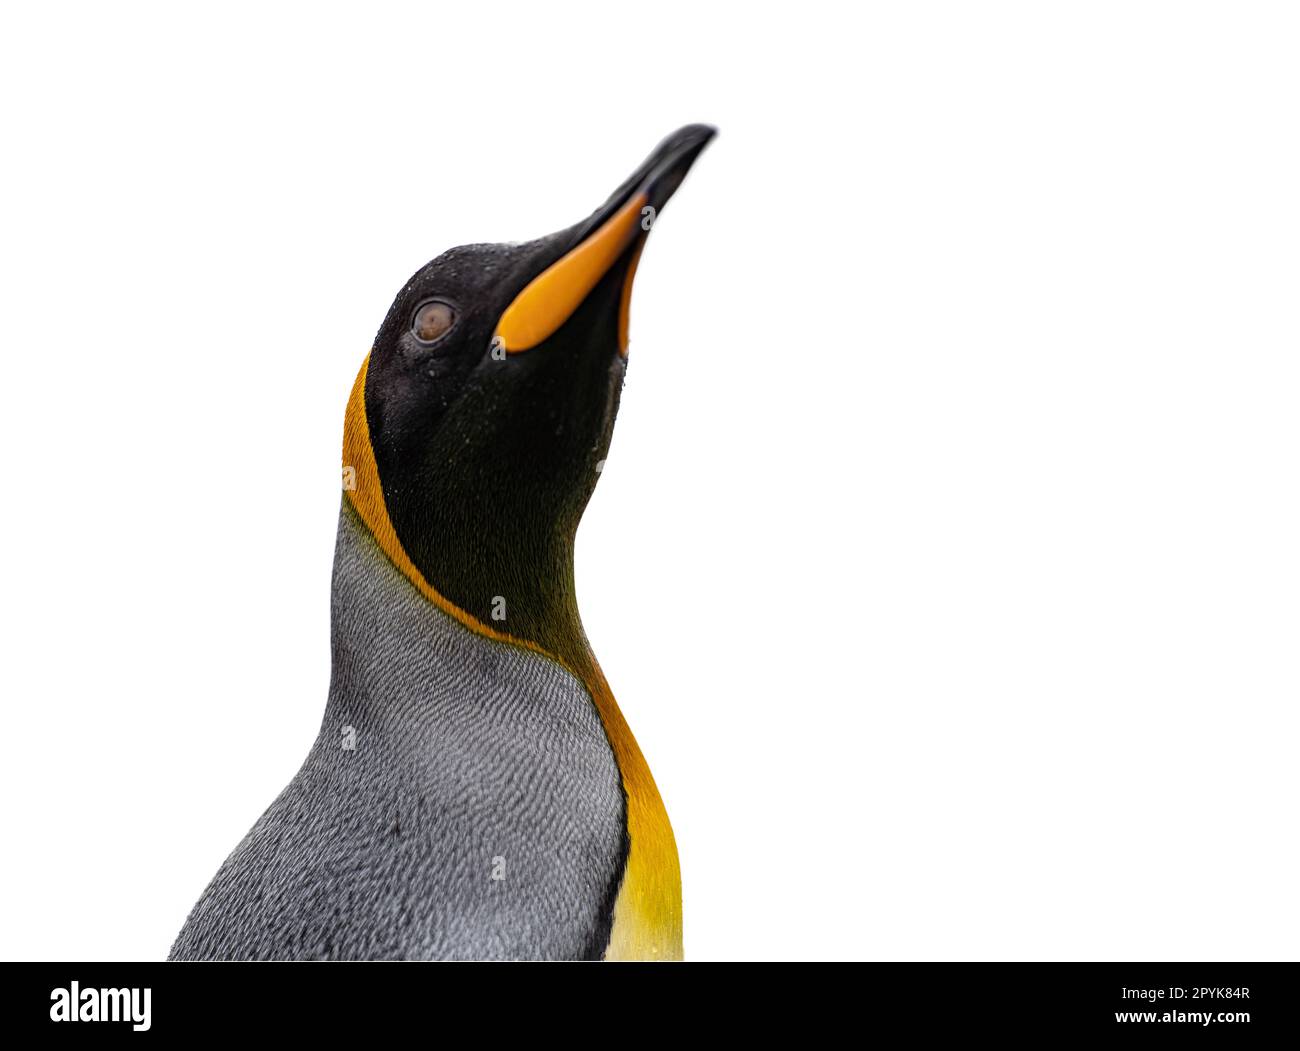 Primo piano laterale della testa di un grazioso pinguino re, ritagliato su uno sfondo bianco Foto Stock